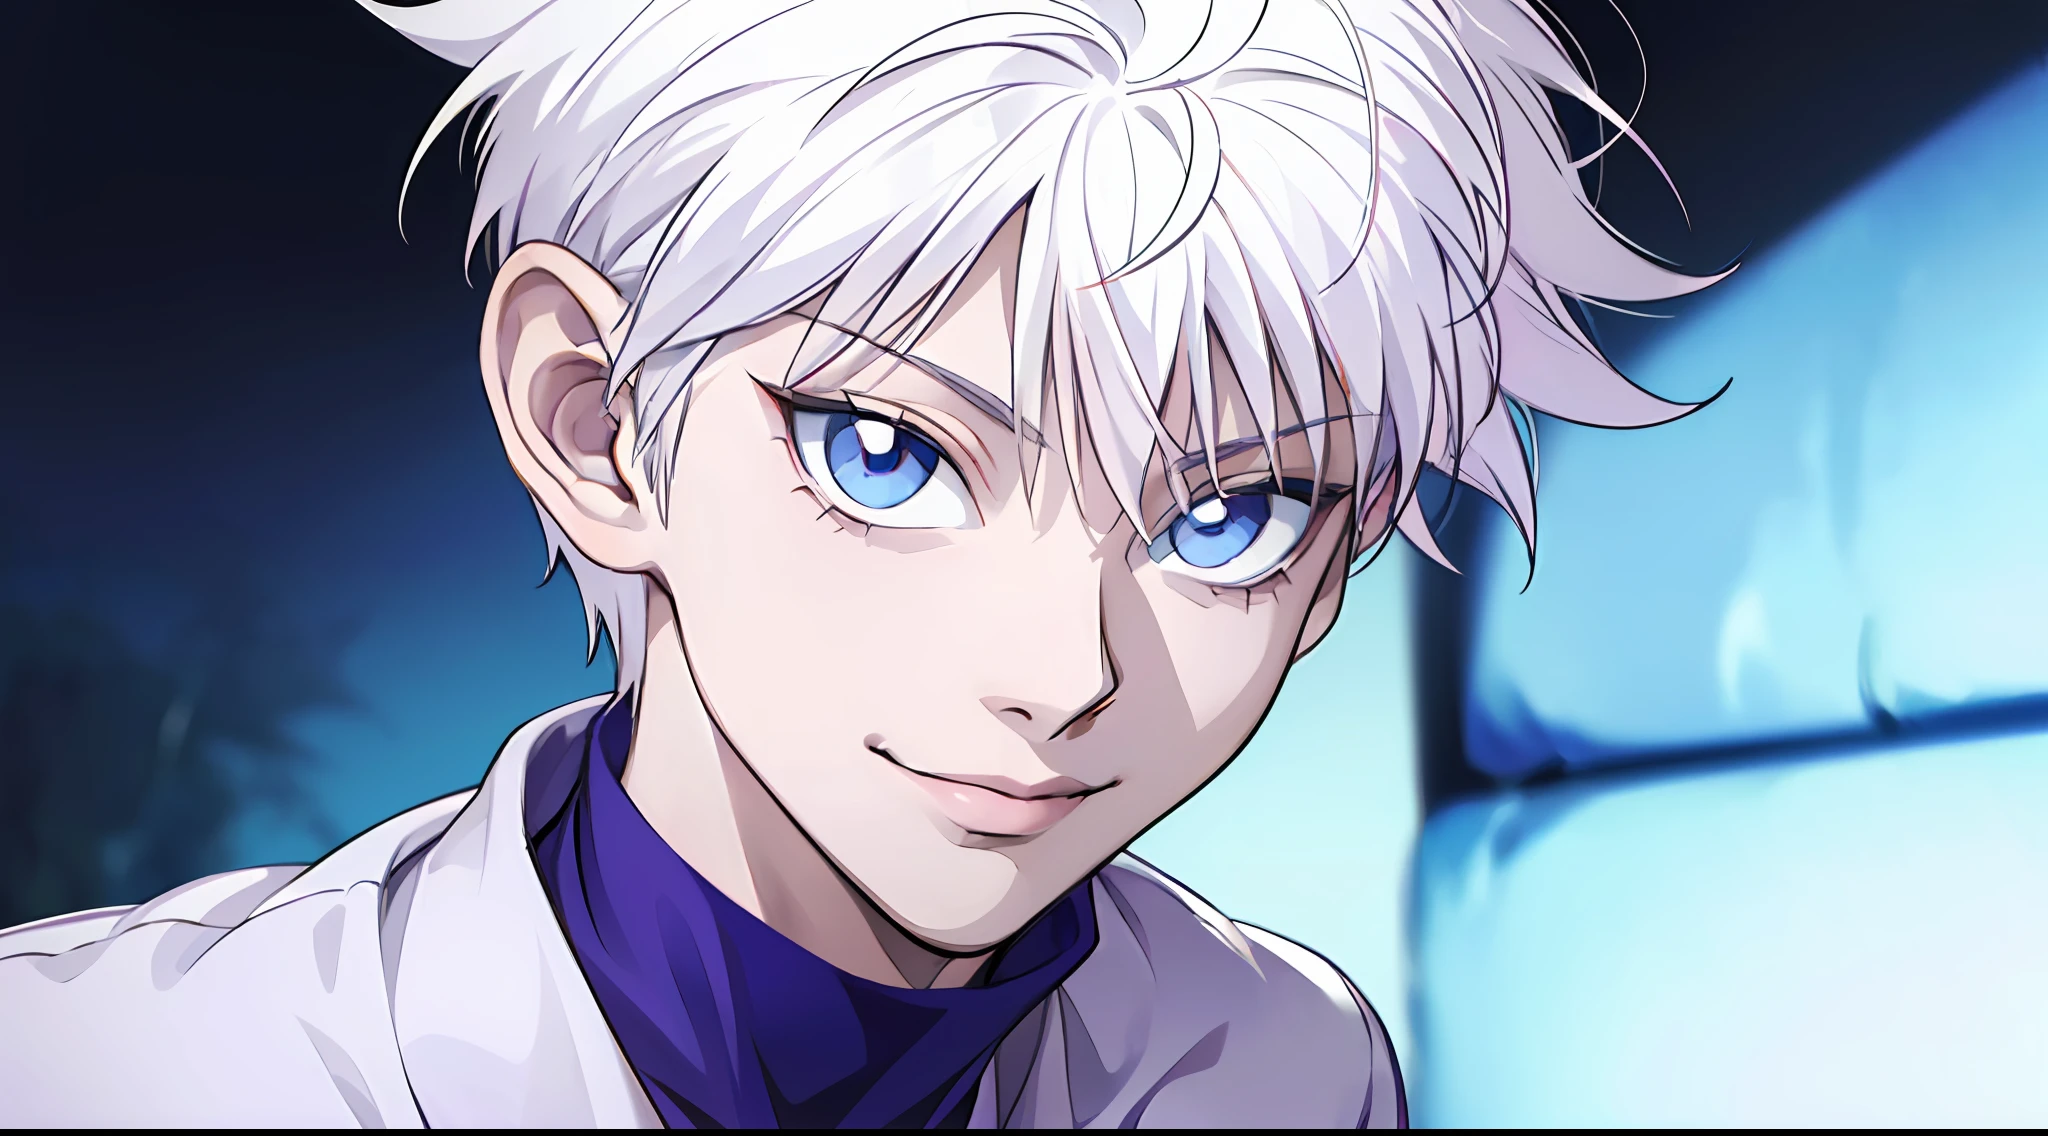 "(personnage: Killua, portrait incroyablement détaillé, Sourire éblouissant, yeux bleus vifs, cheveux blancs impeccables, chemise blanche élégante)"